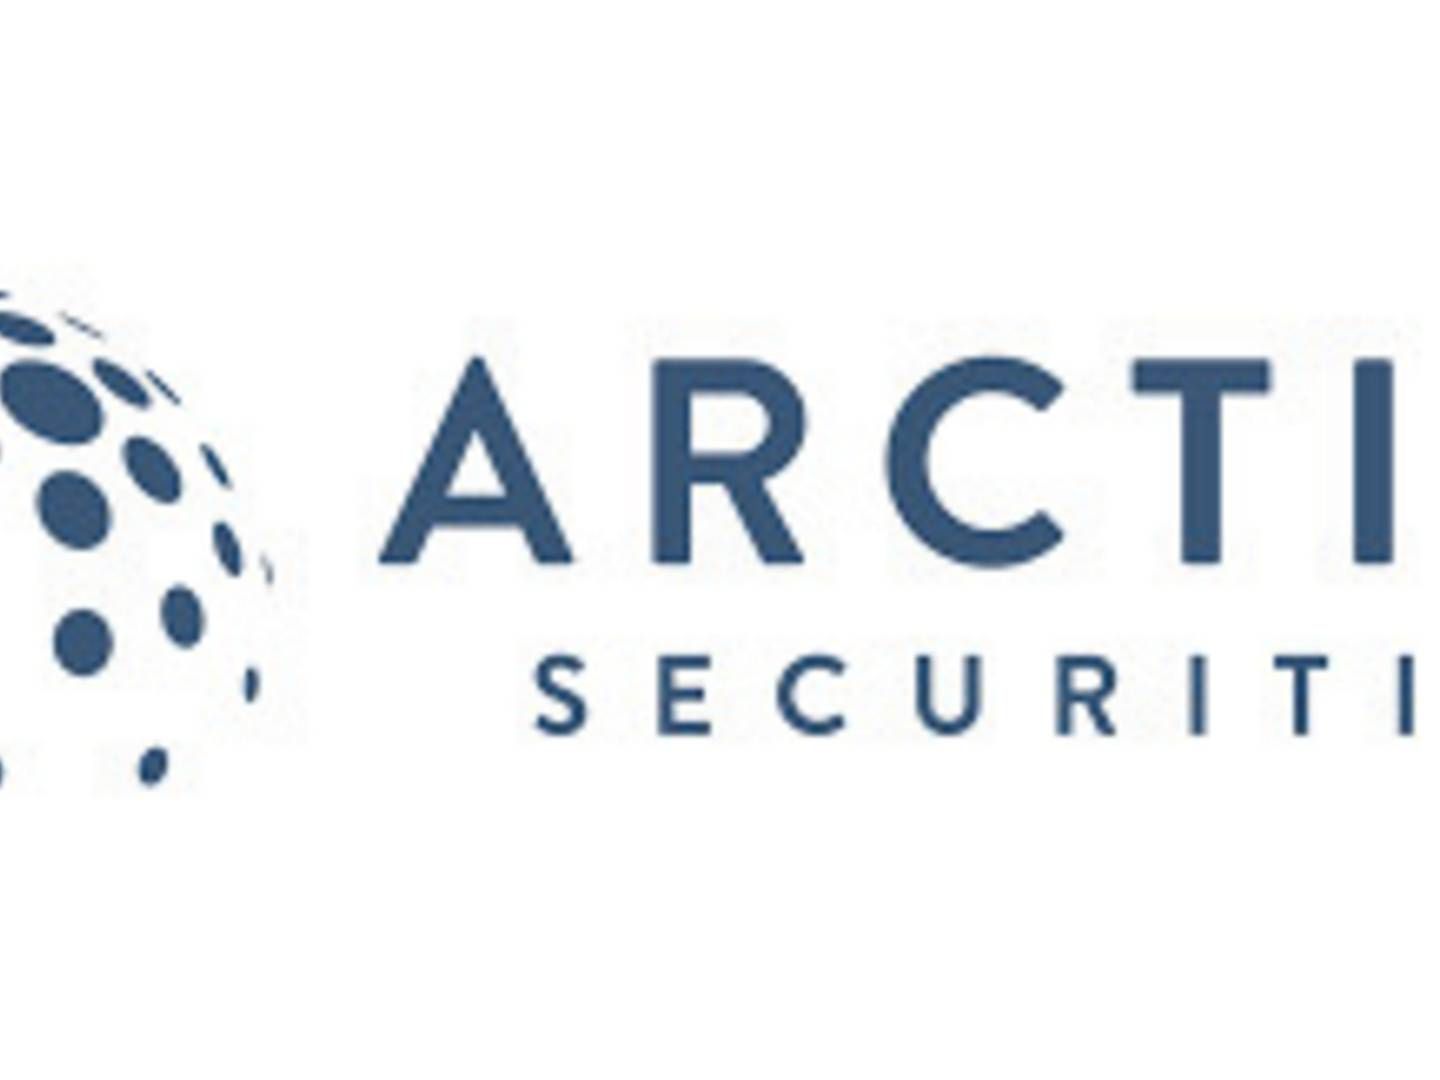 Arkivbilde. Arcitc Securities får ytterligere ett tematilsyn fra Finanstilsynet etter funnene i forrige tilsyn. | Foto: Arctic Securities/PR